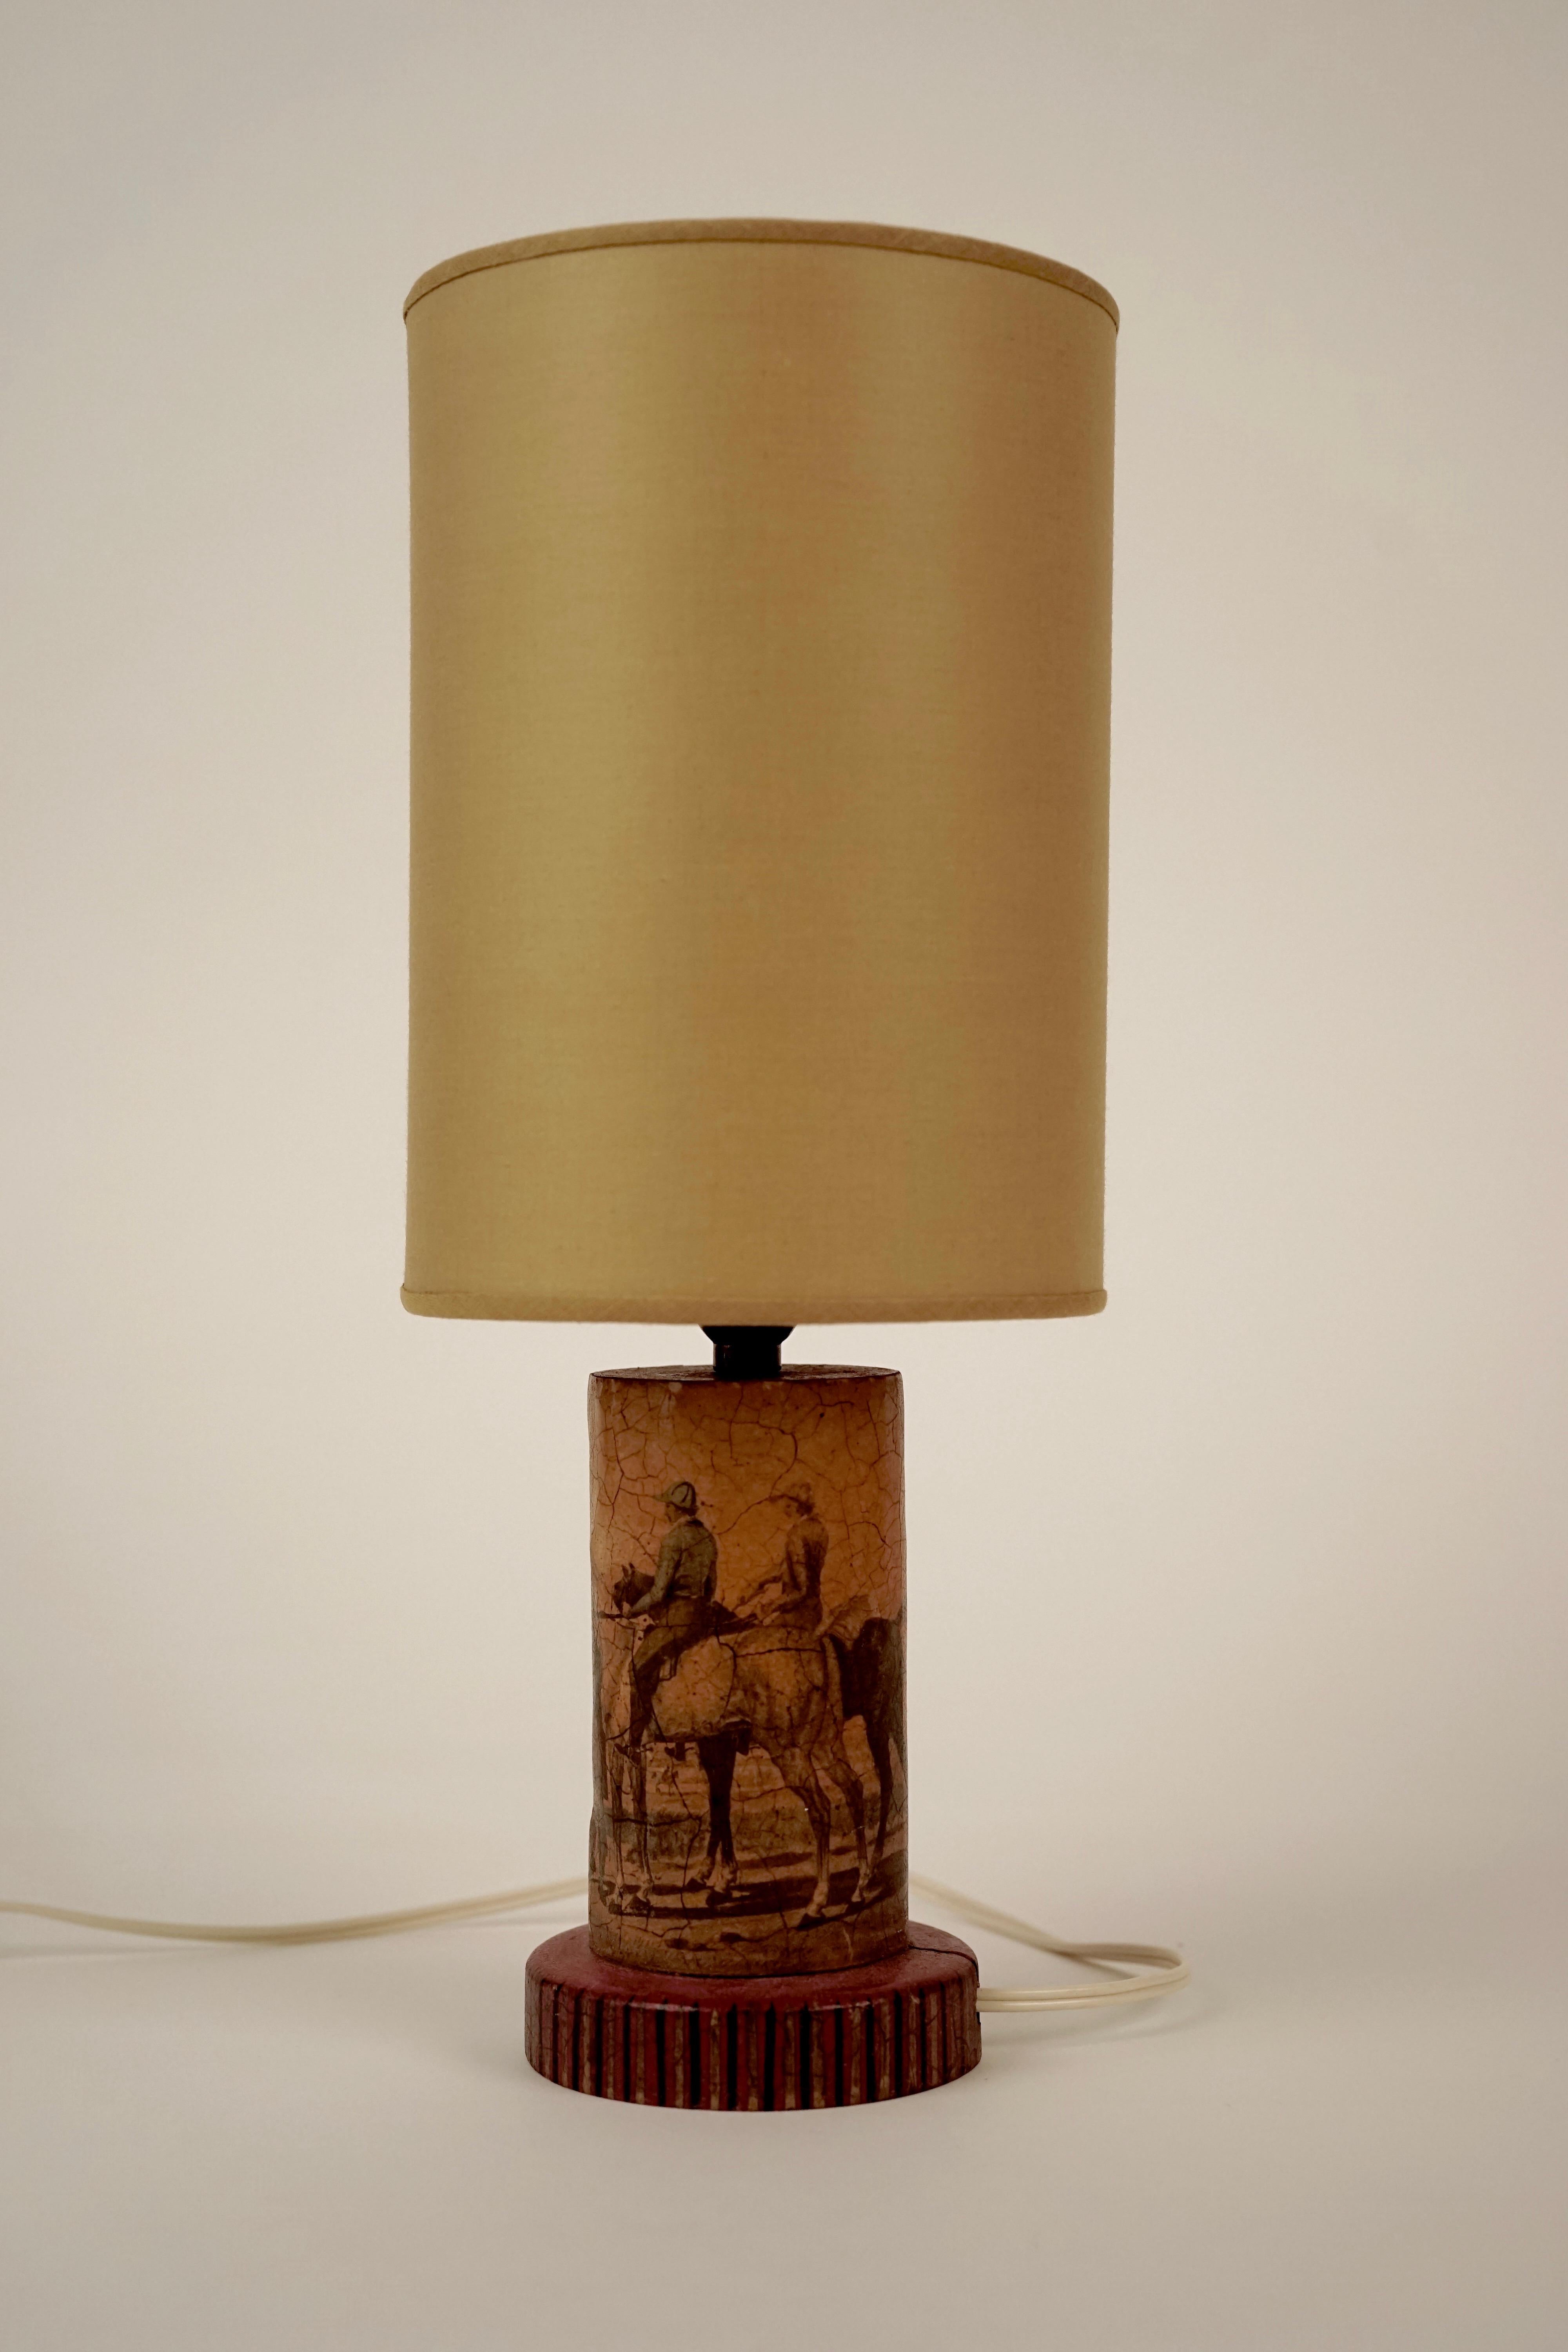 Jolie lampe en bois avec motif de découpage : Campagne anglaise avec des cavaliers. 
Les détails de la base sont peints à la main. La teinte est nouvelle.
La base présente une fissure due au mouvement naturel du bois.
  